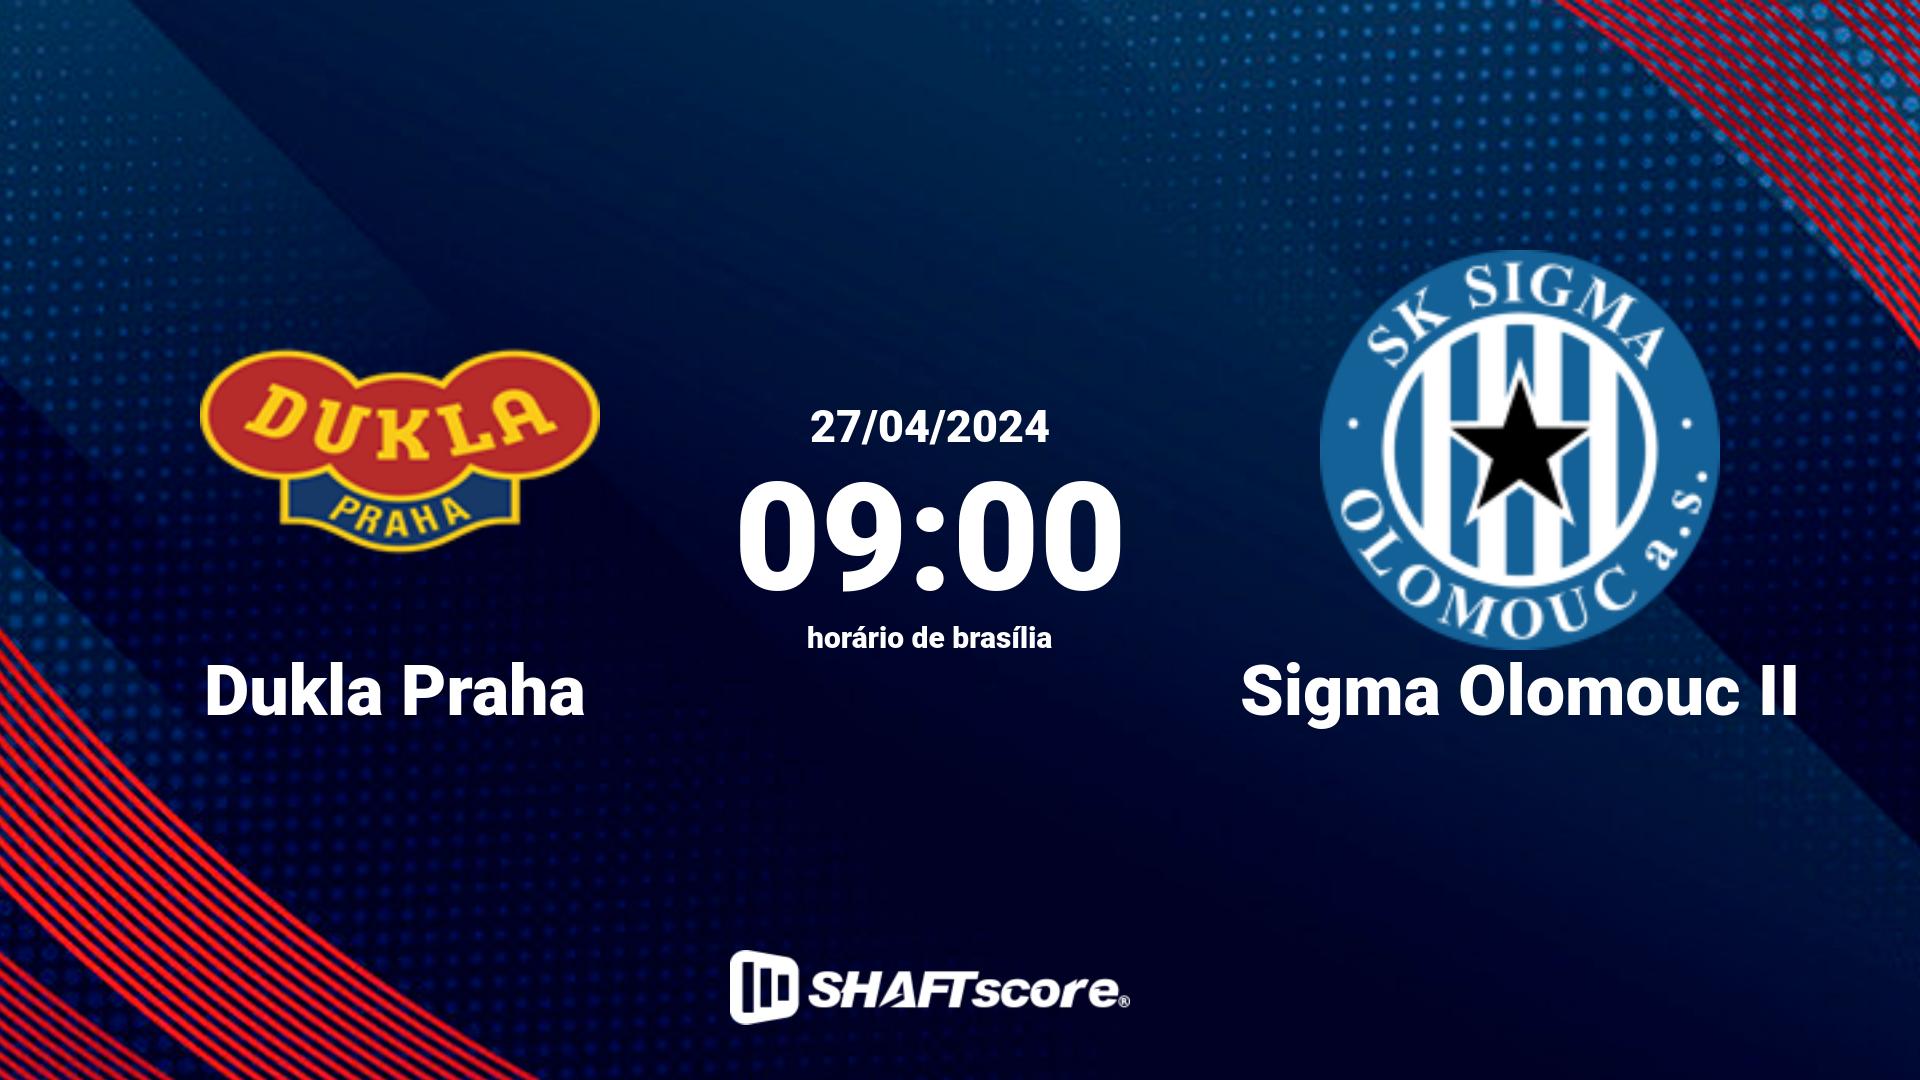 Estatísticas do jogo Dukla Praha vs Sigma Olomouc II 27.04 09:00